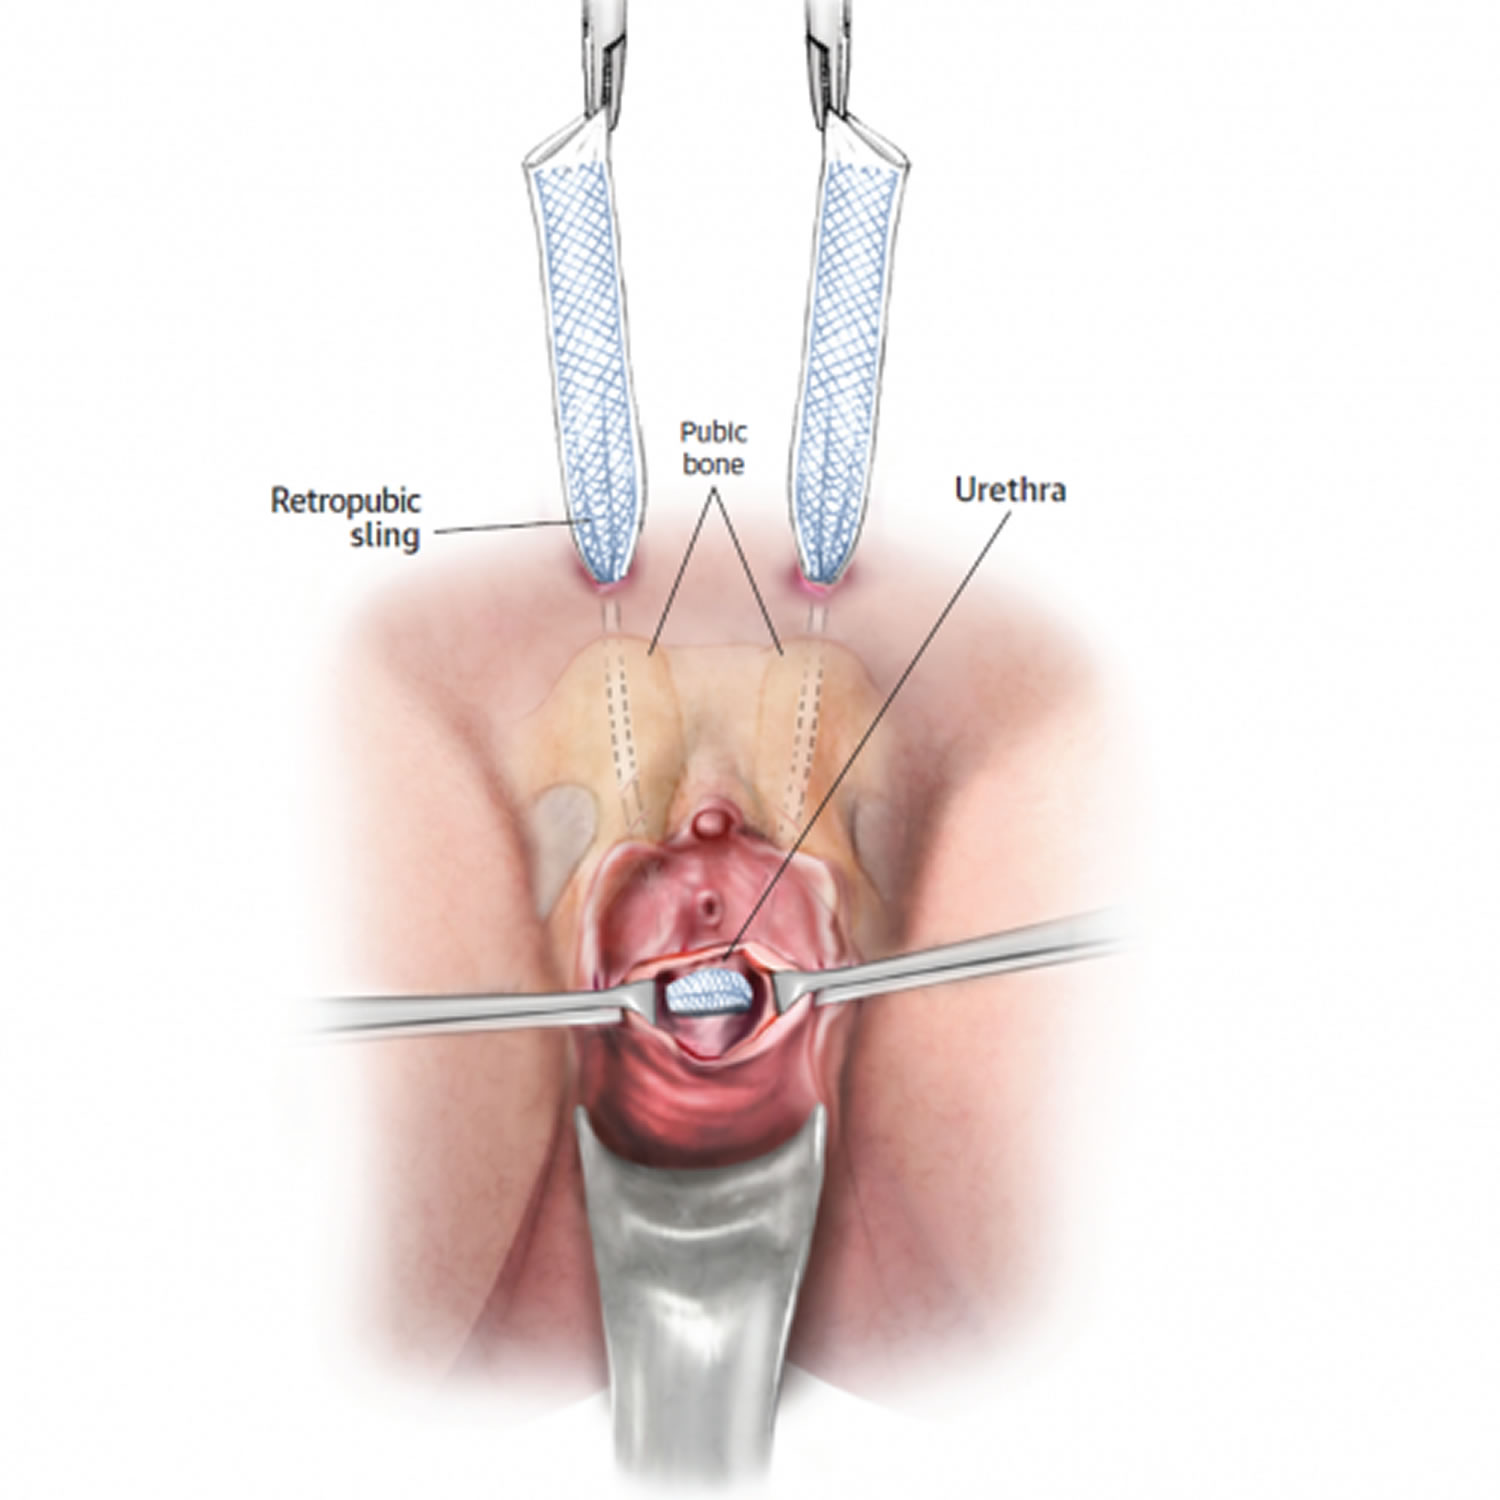 urethral sling procedure. 